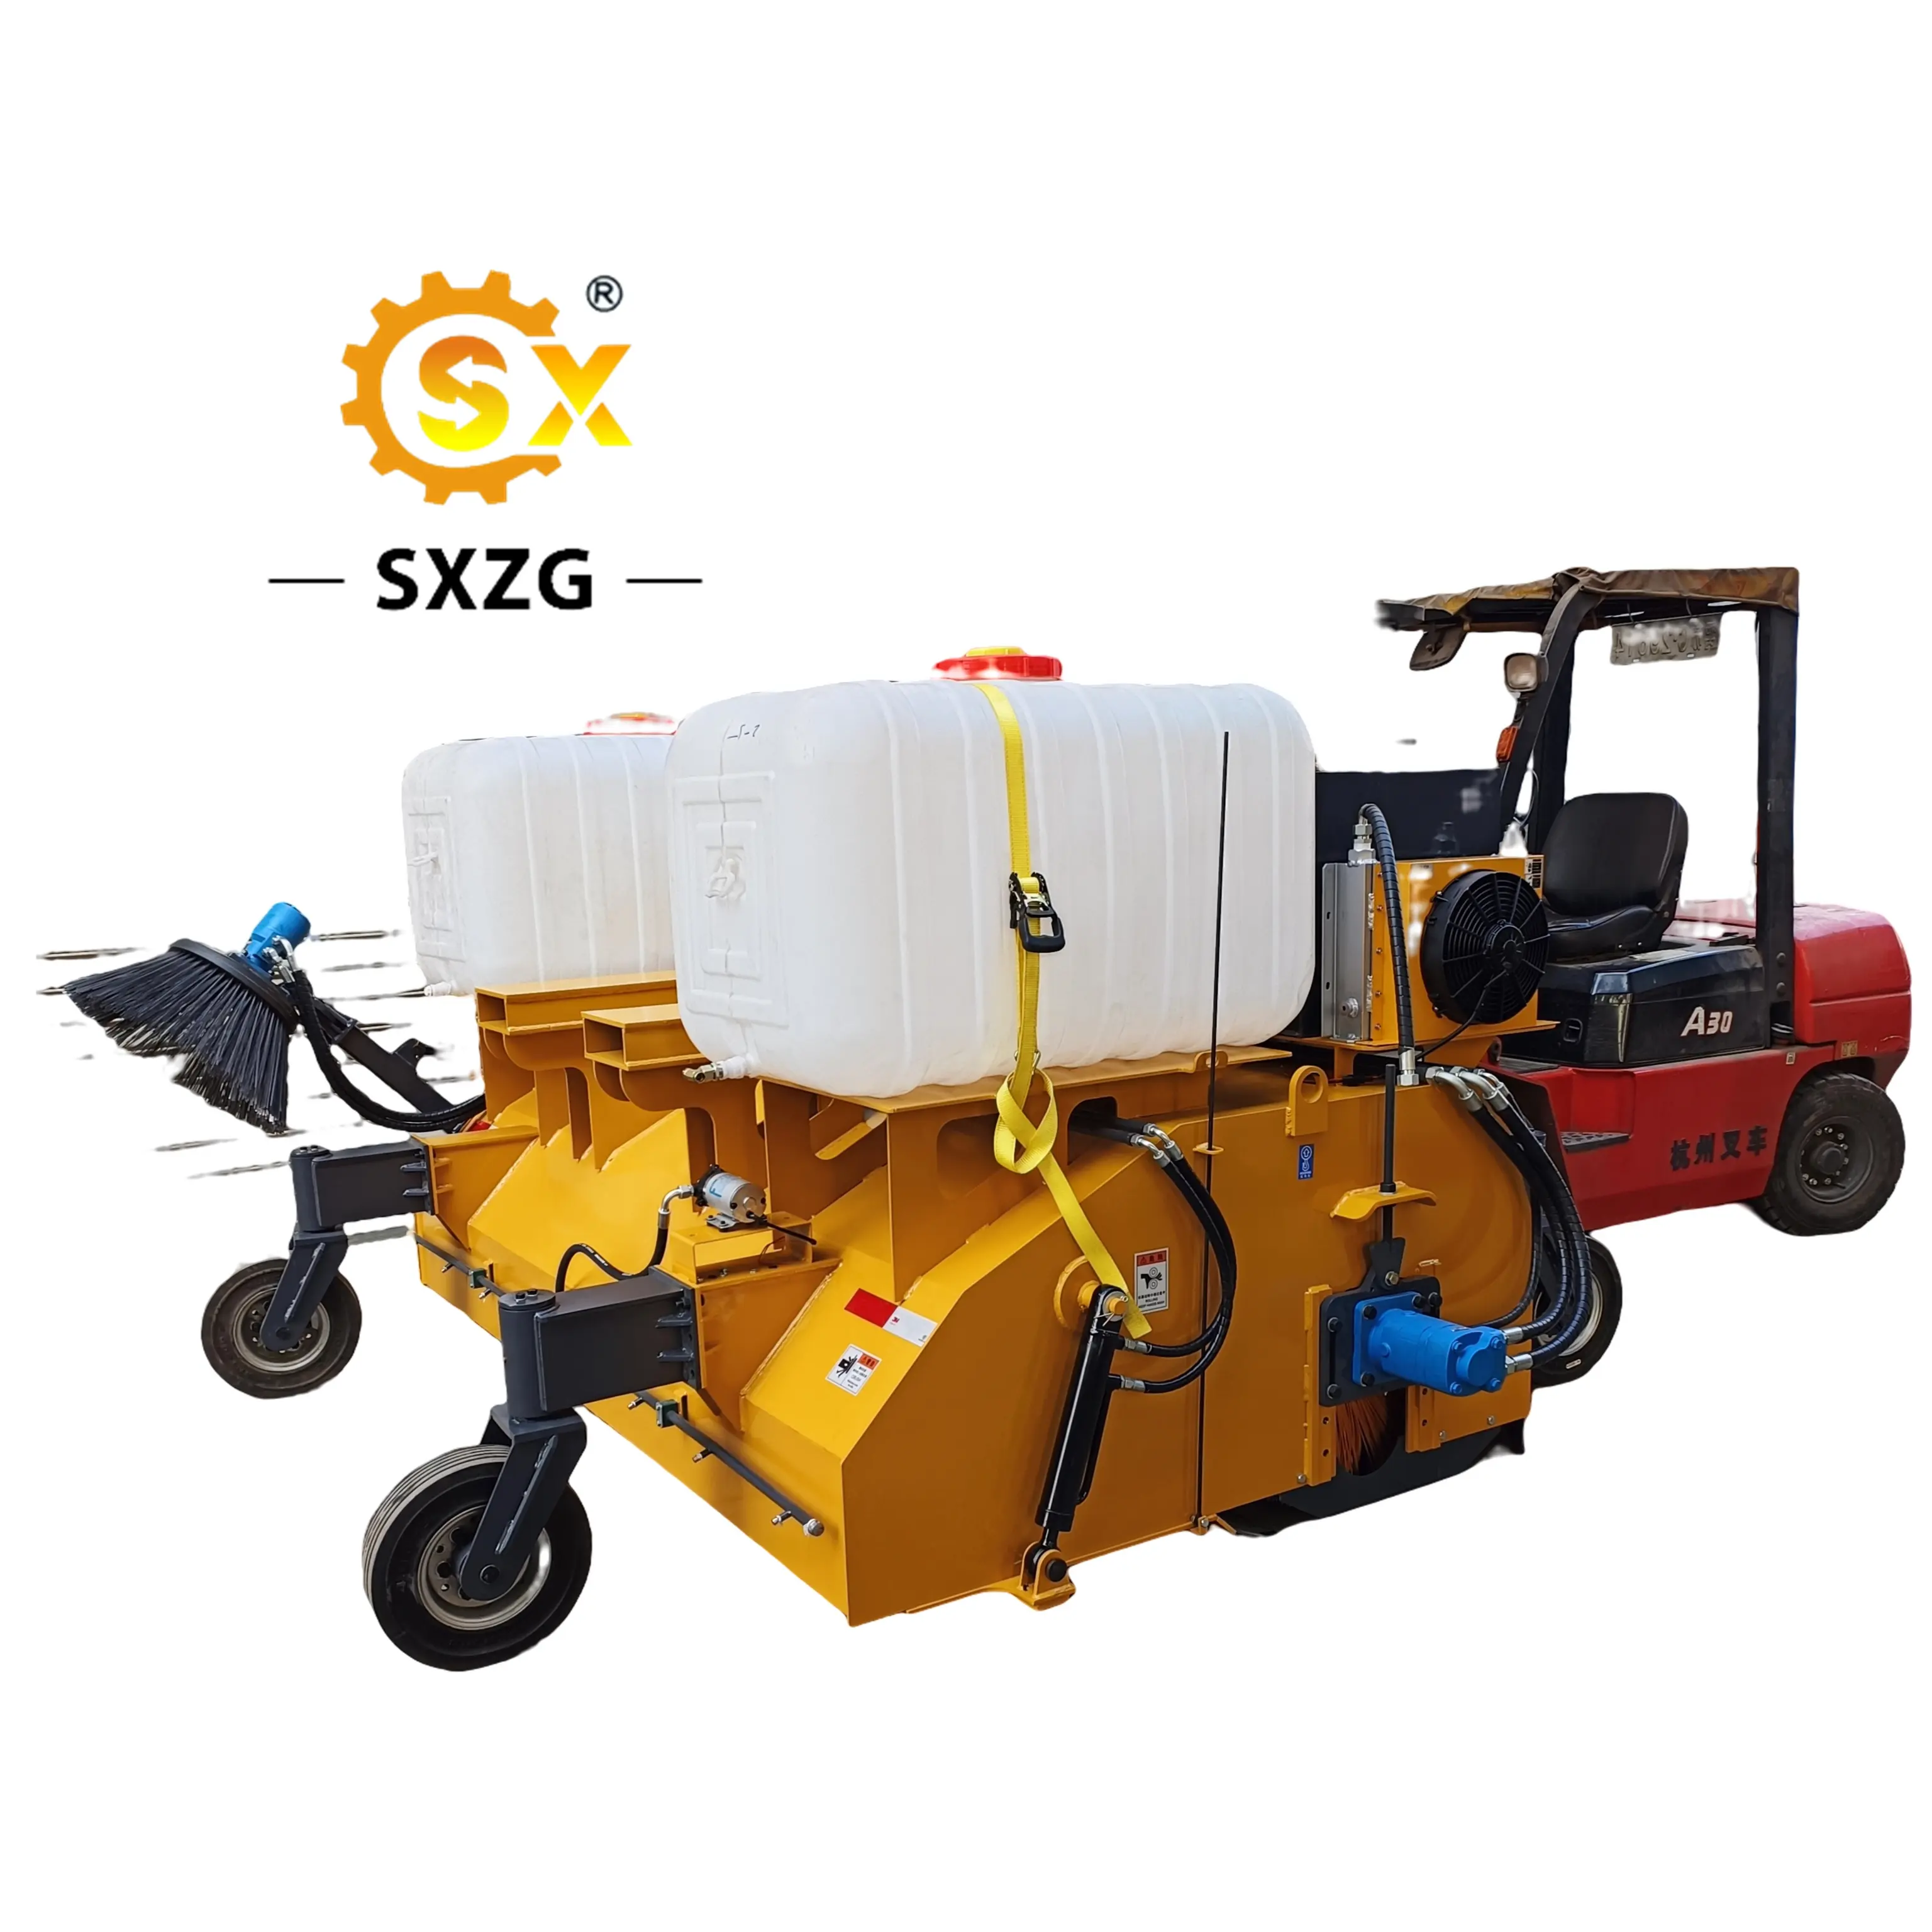 Balayeuse de ramassage de série SXZG avec chariot élévateur pour nettoyer les ports, les cours de charbon, les routes urbaines